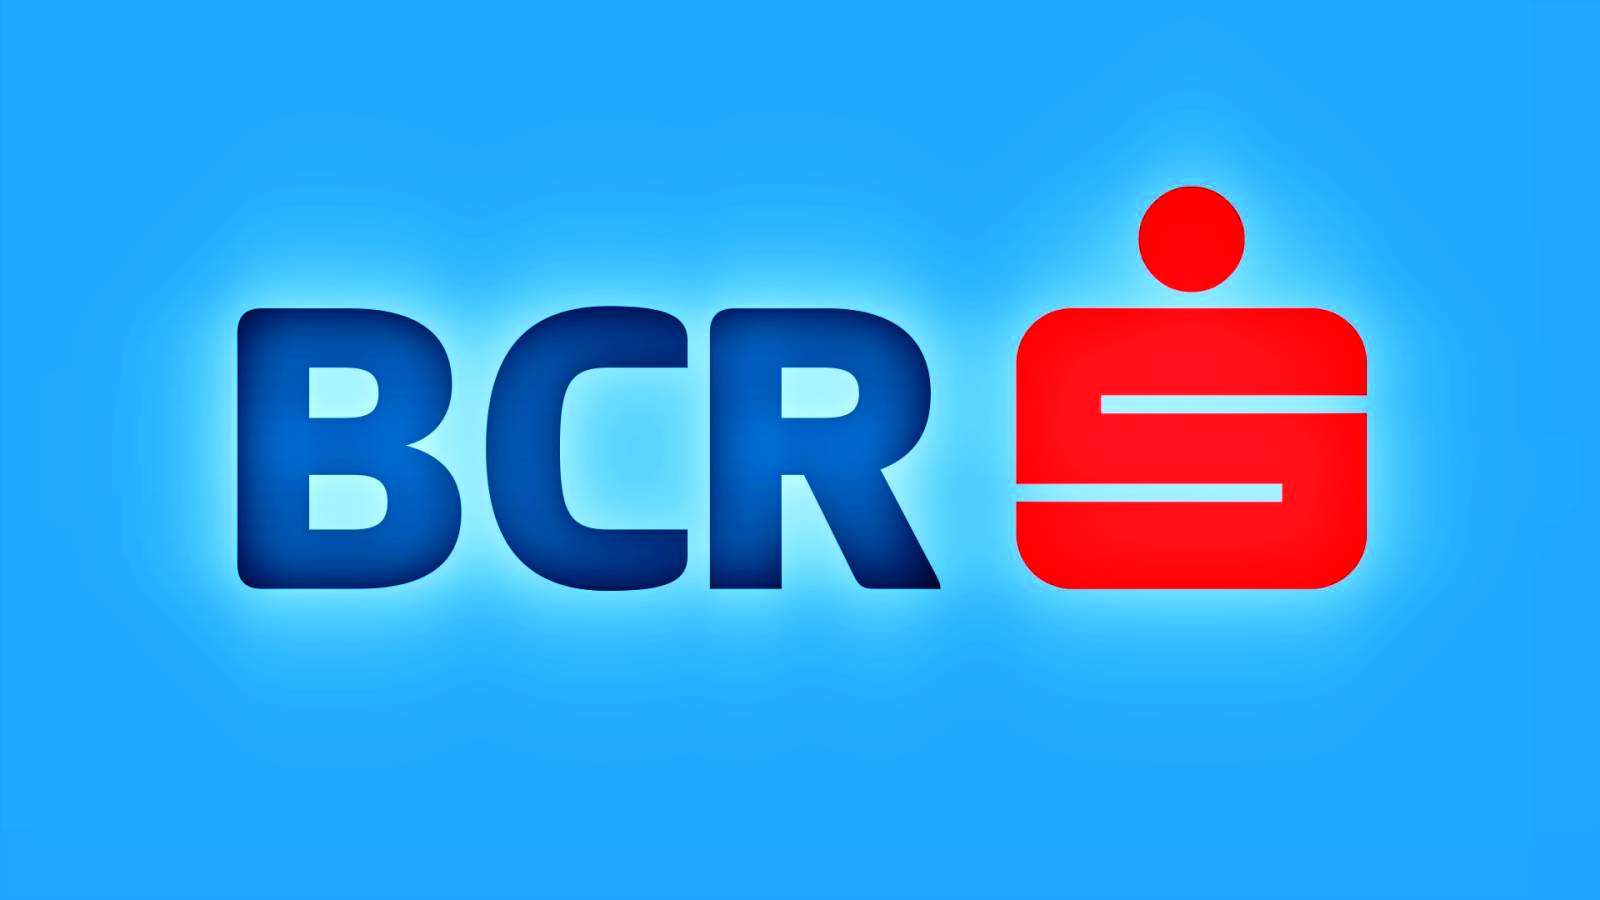 BCR Rumania vacaciones